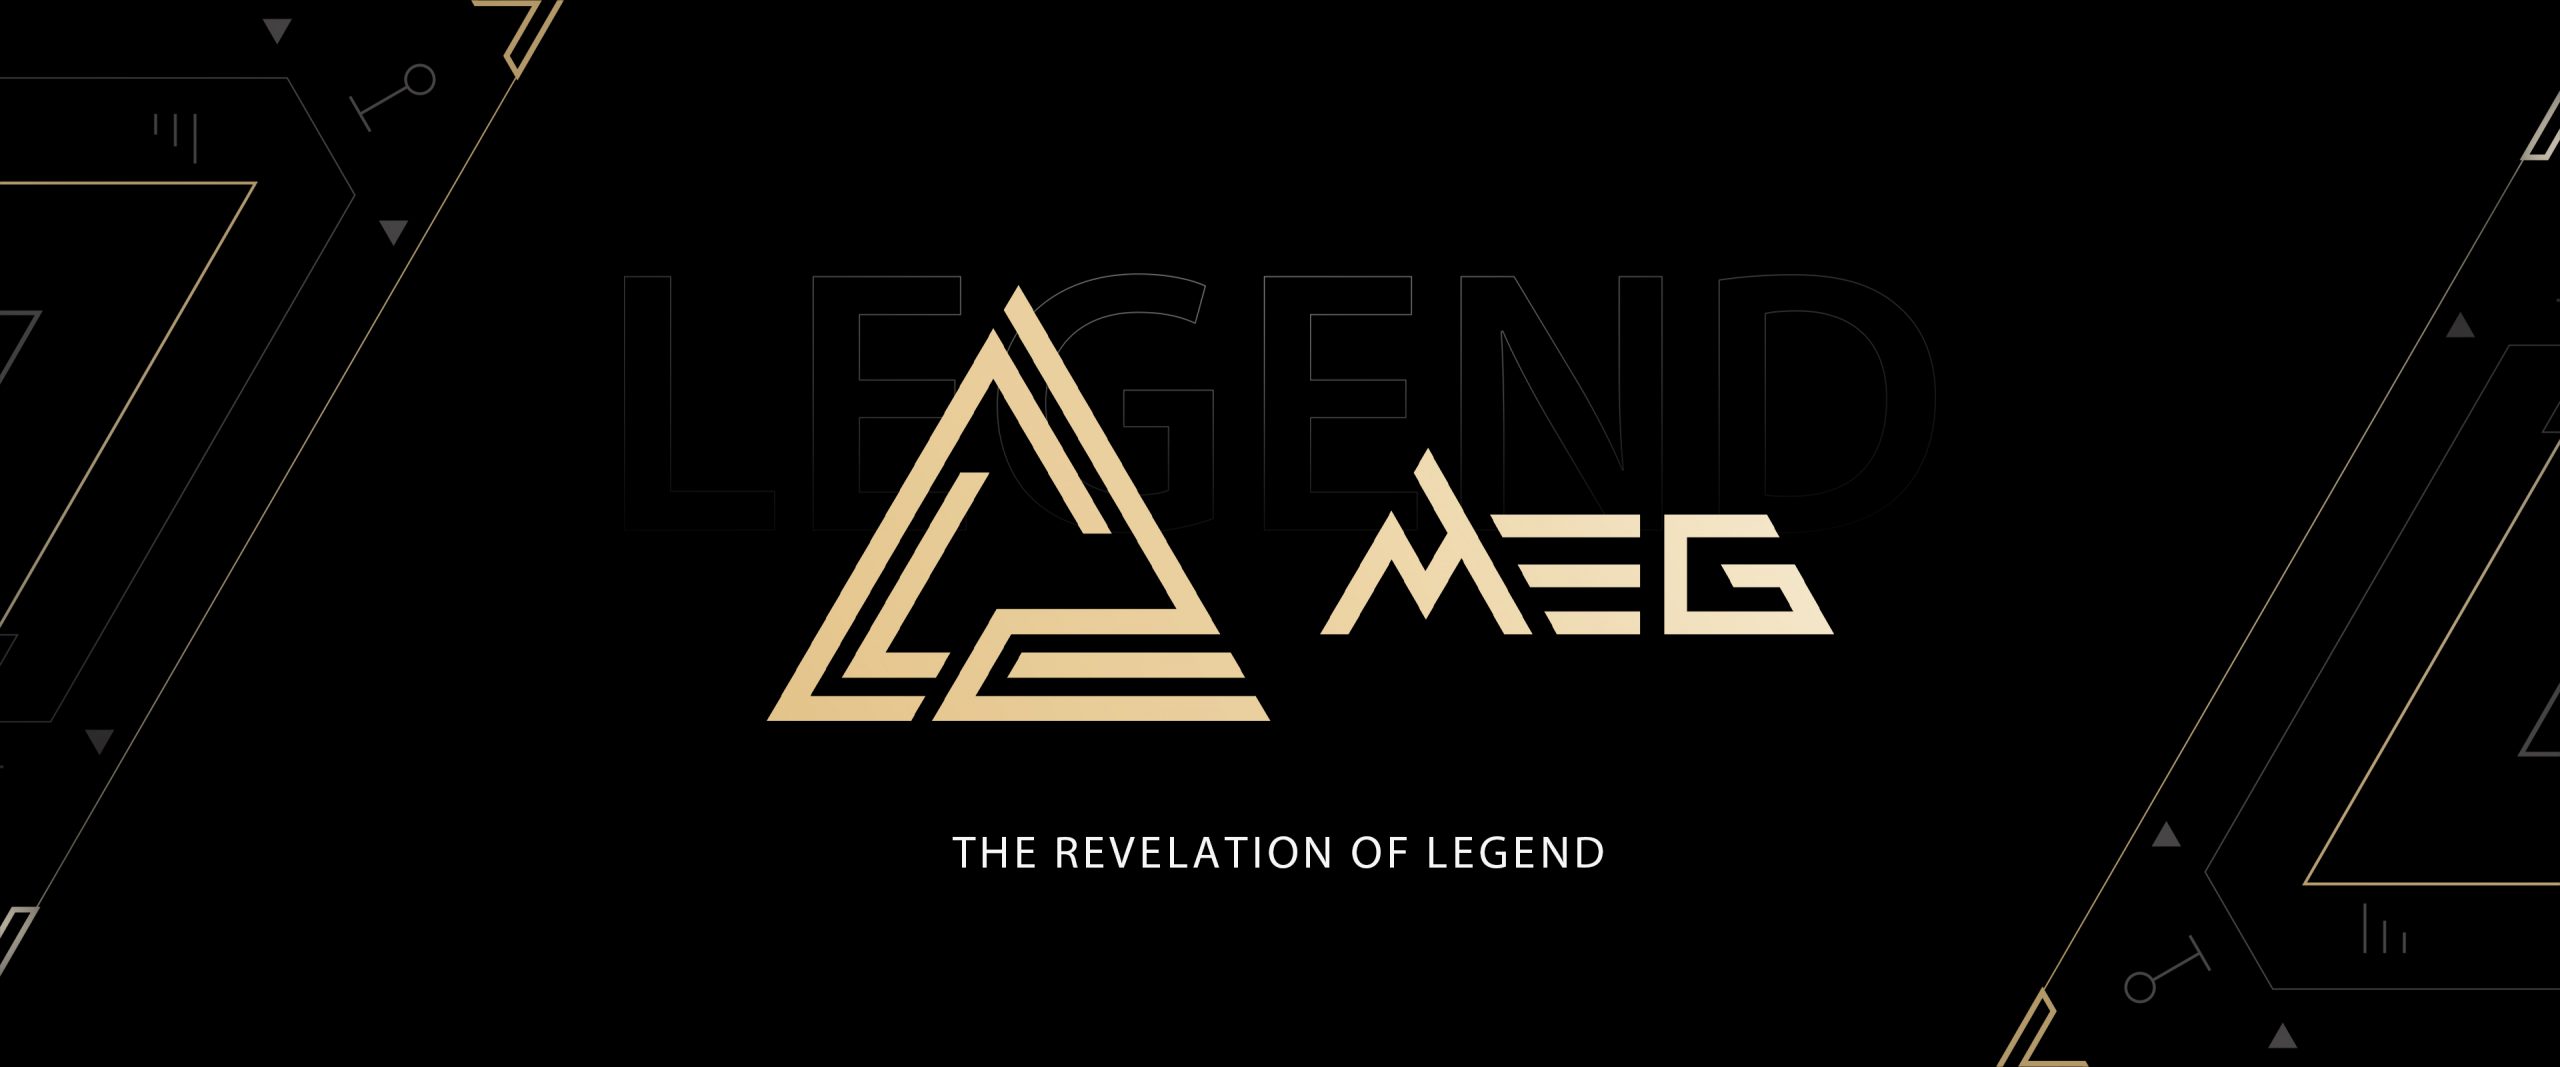 MSI Gaming công bố biểu tượng mới Cho các dòng sản phẩm MEG, MPG và MAG